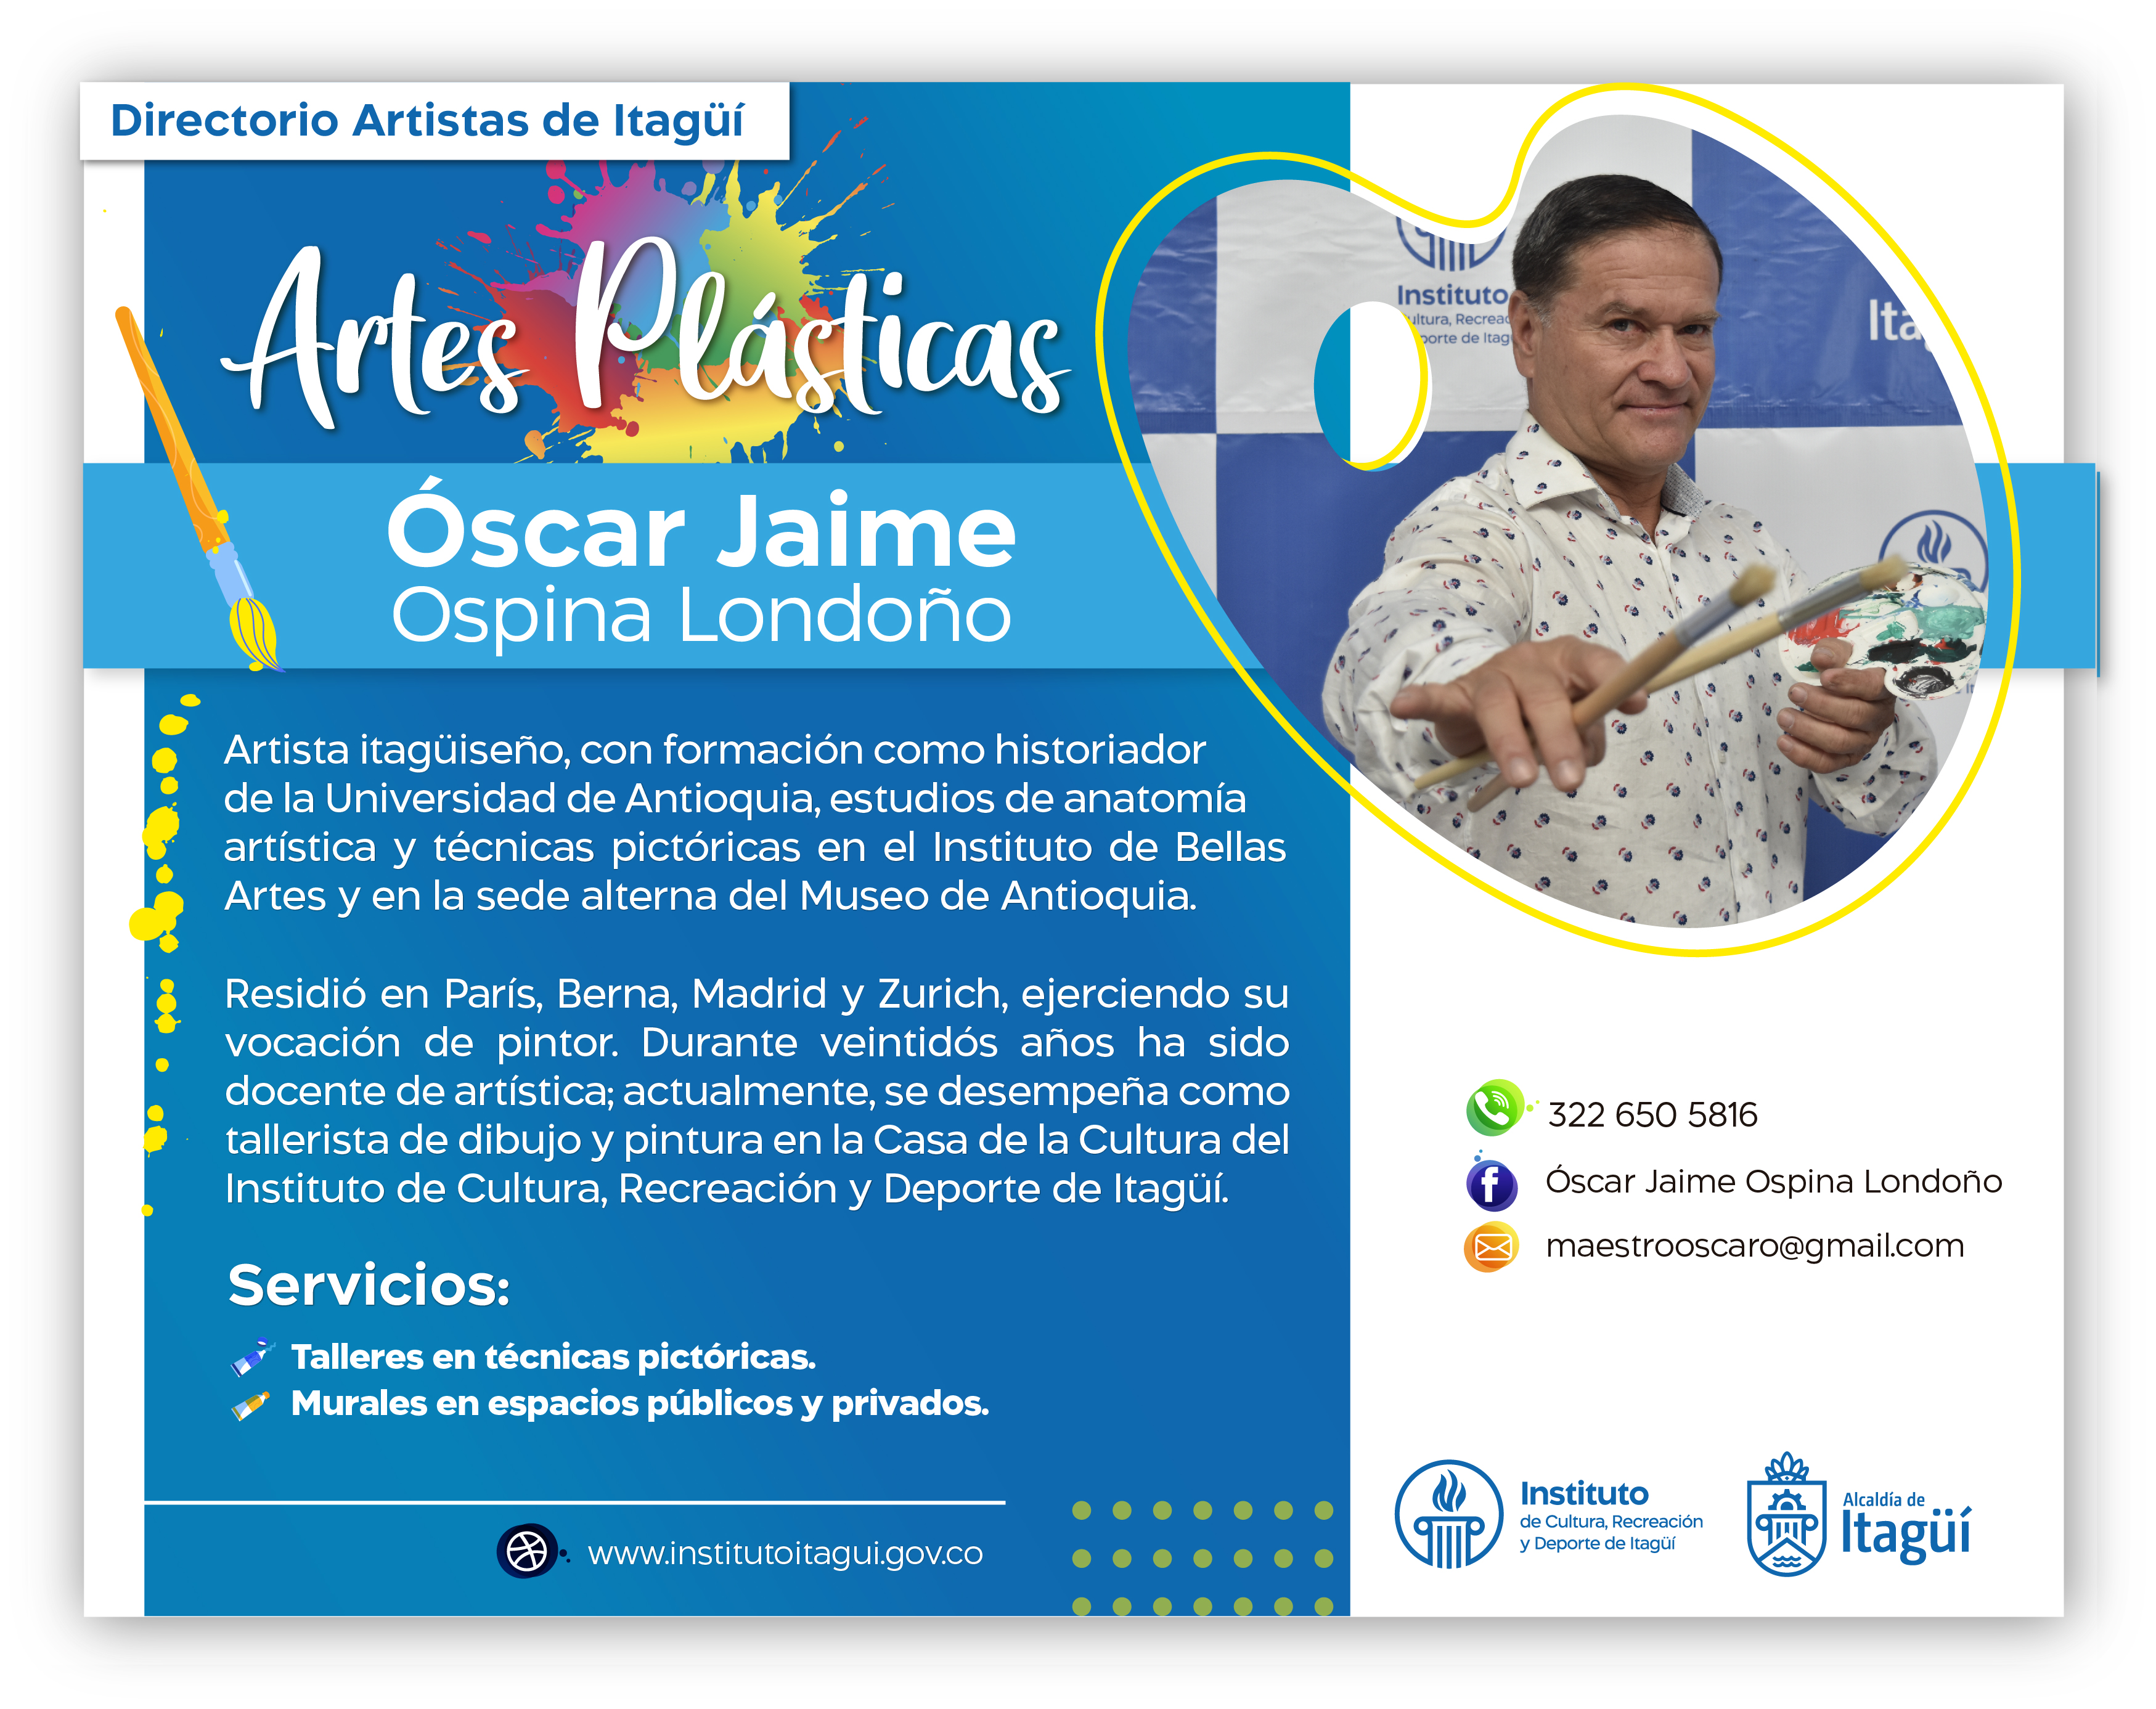 Oscar Jaime Ospina